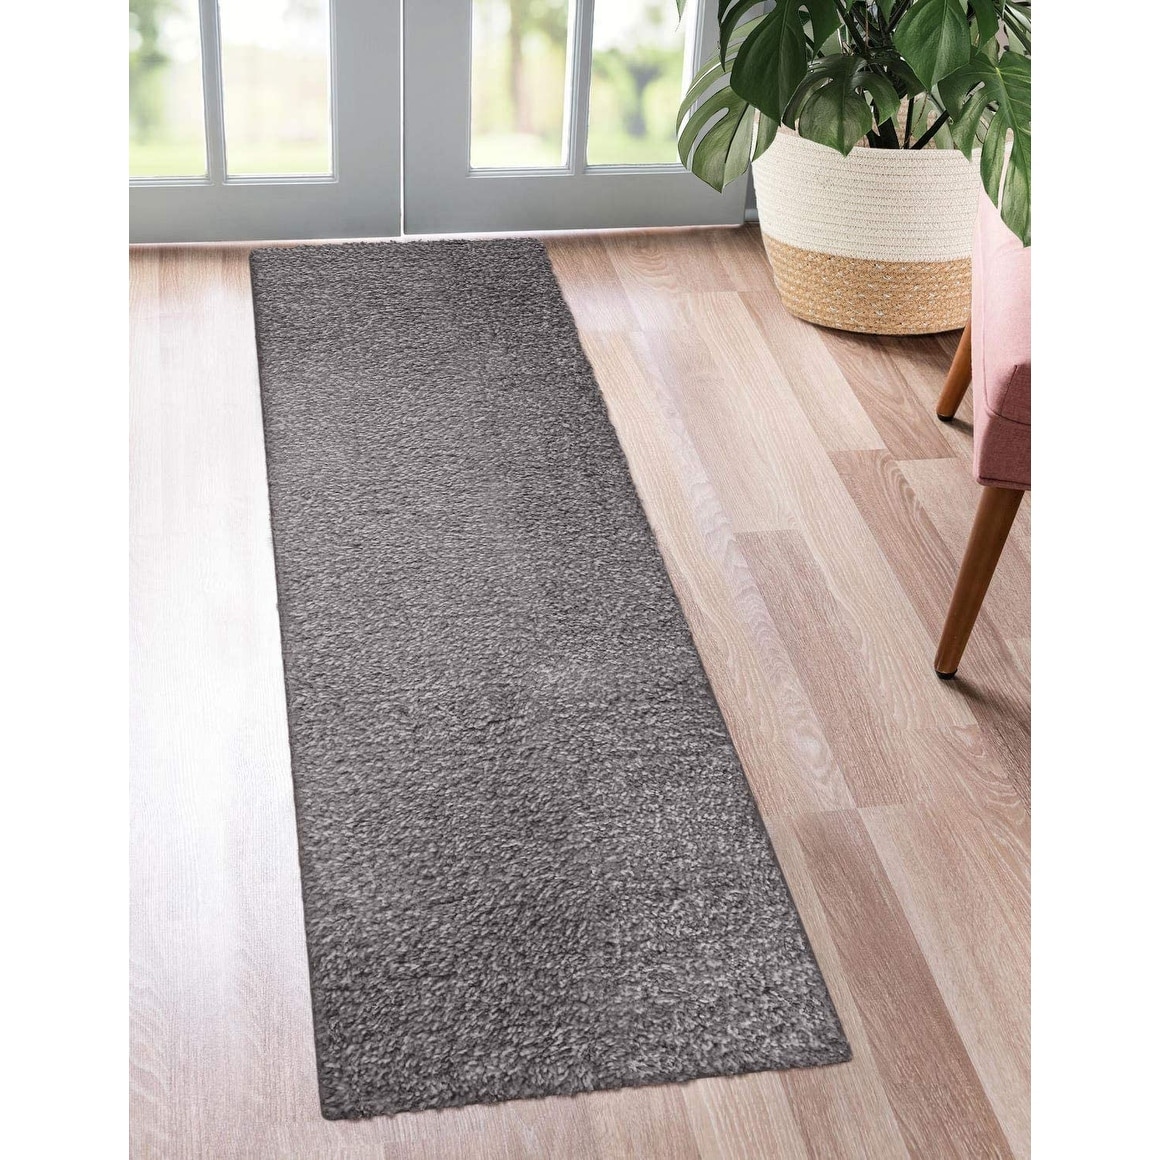 Non-Slip Waterproof Kitchen Door Mat Machine Washable Home Floor Rug Carpet 